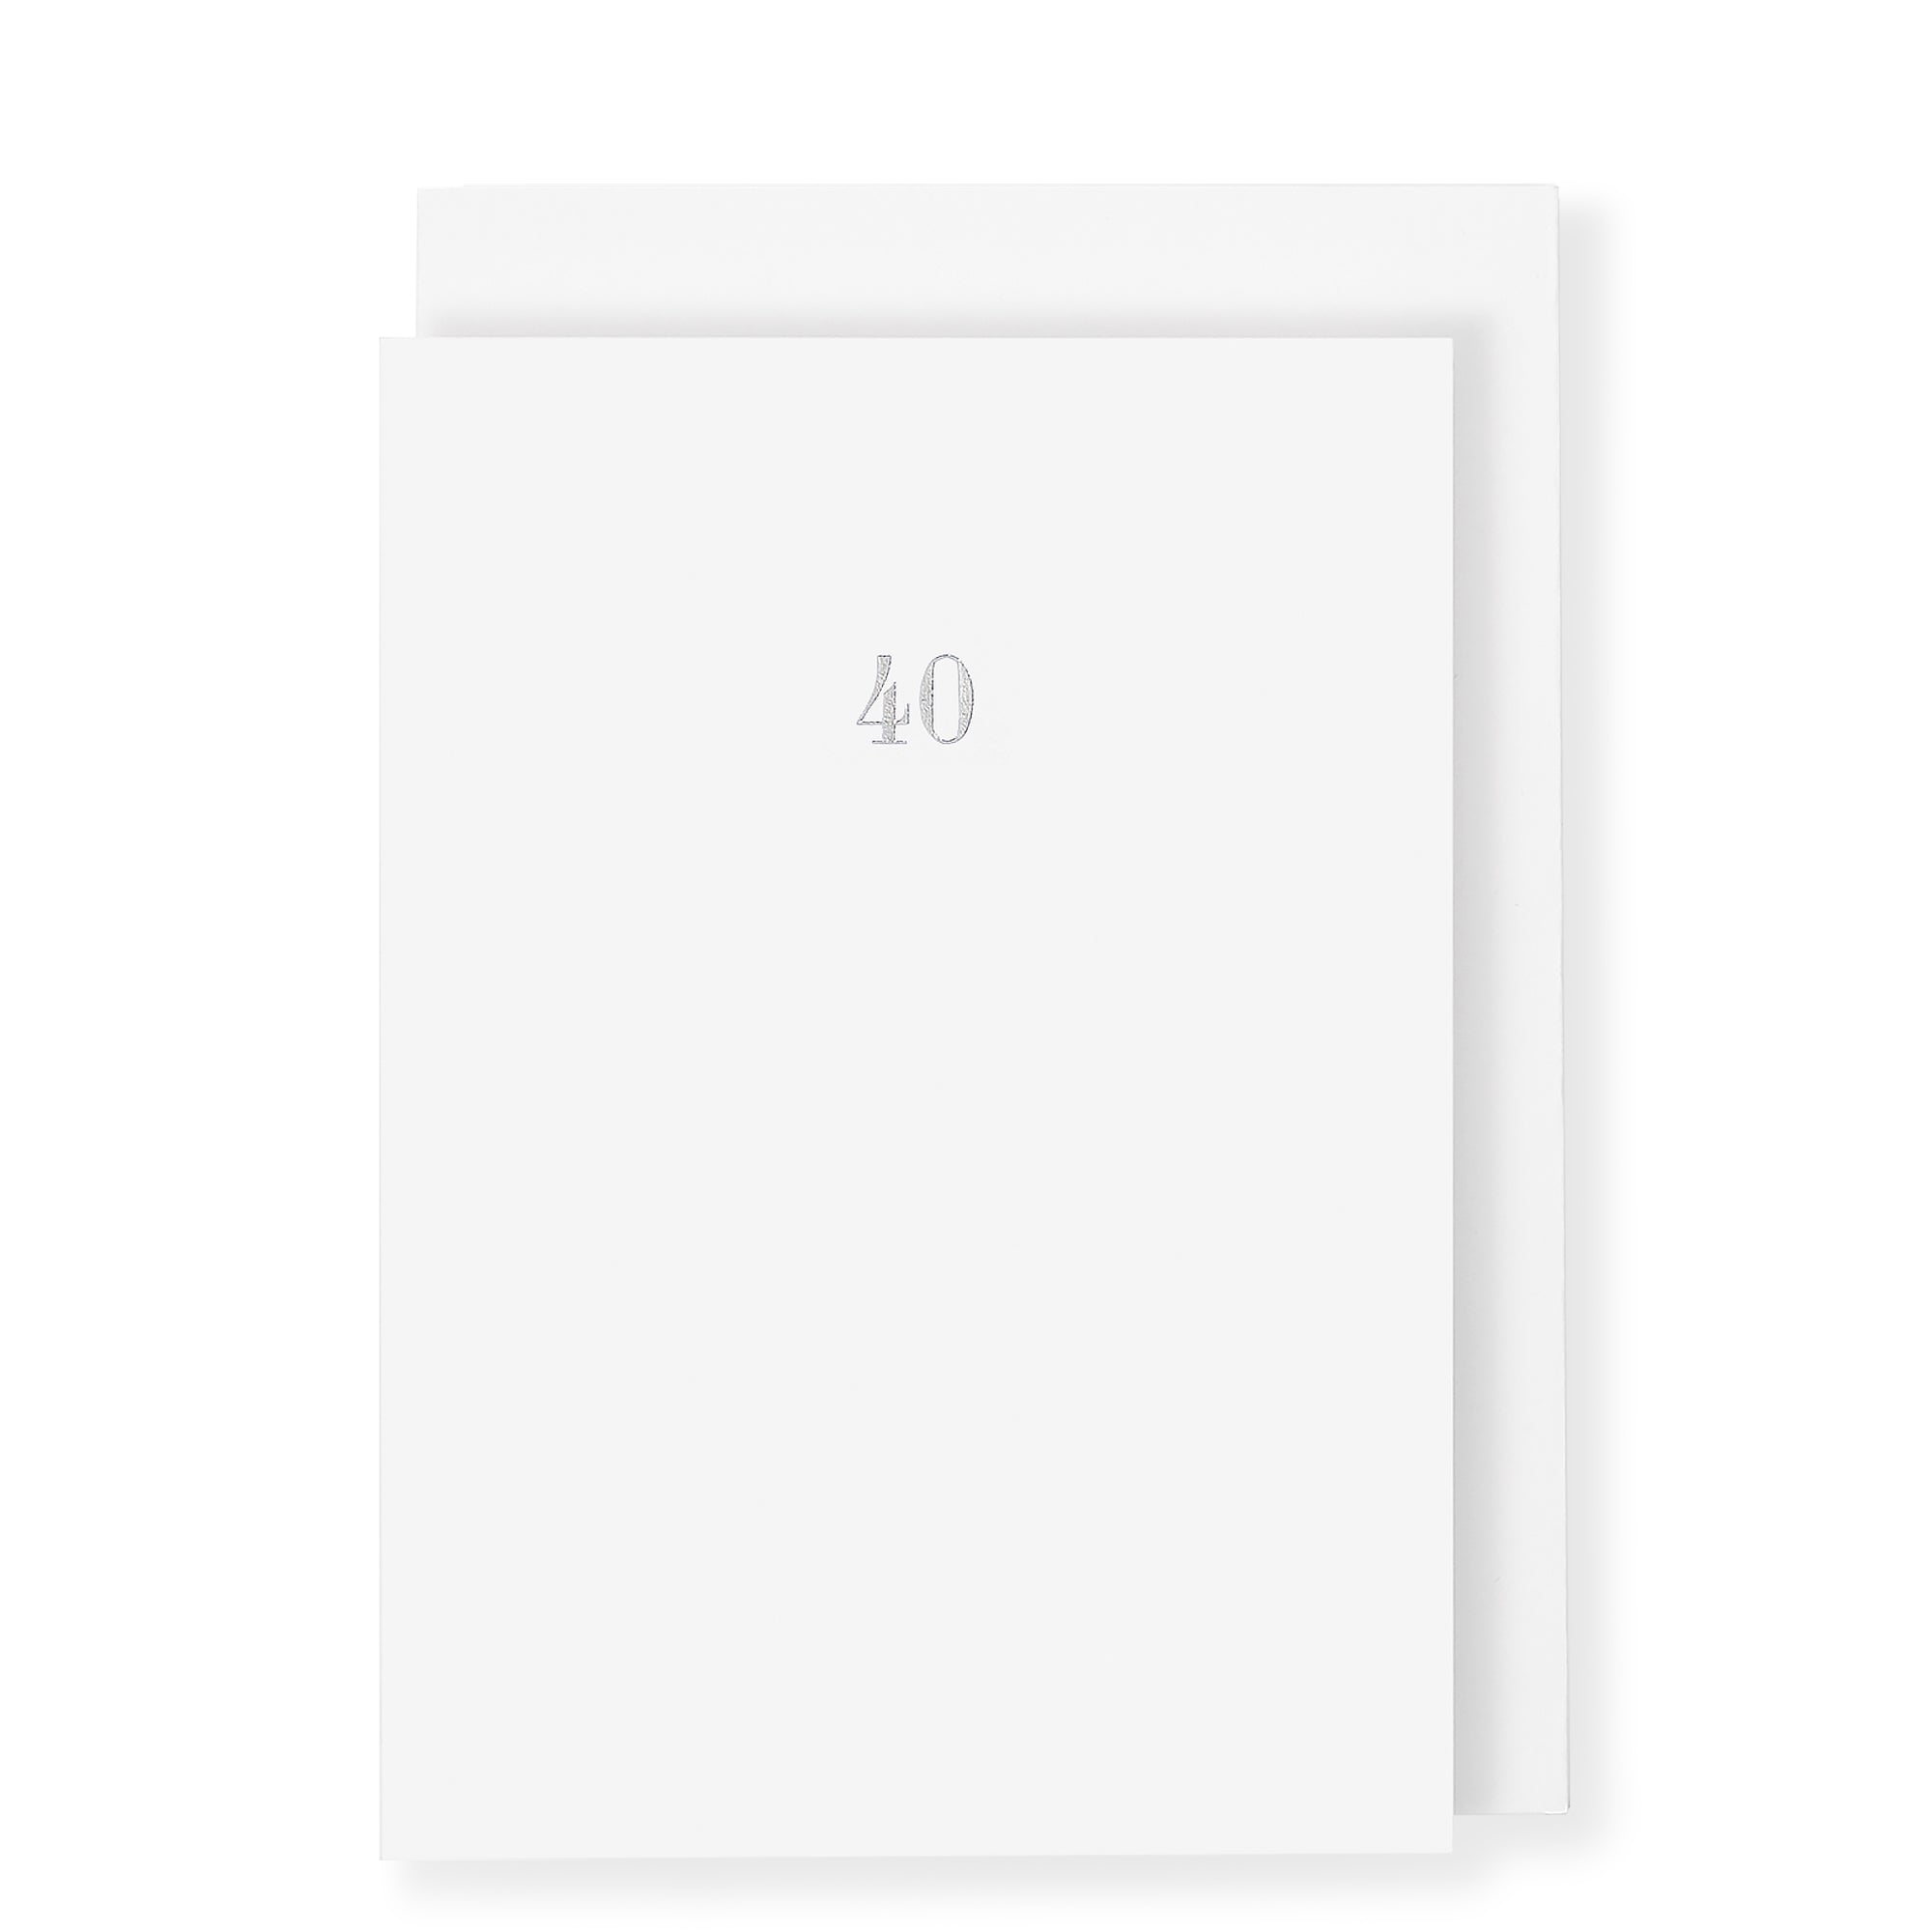 40th Birthday Milestone Anniversary Card, White